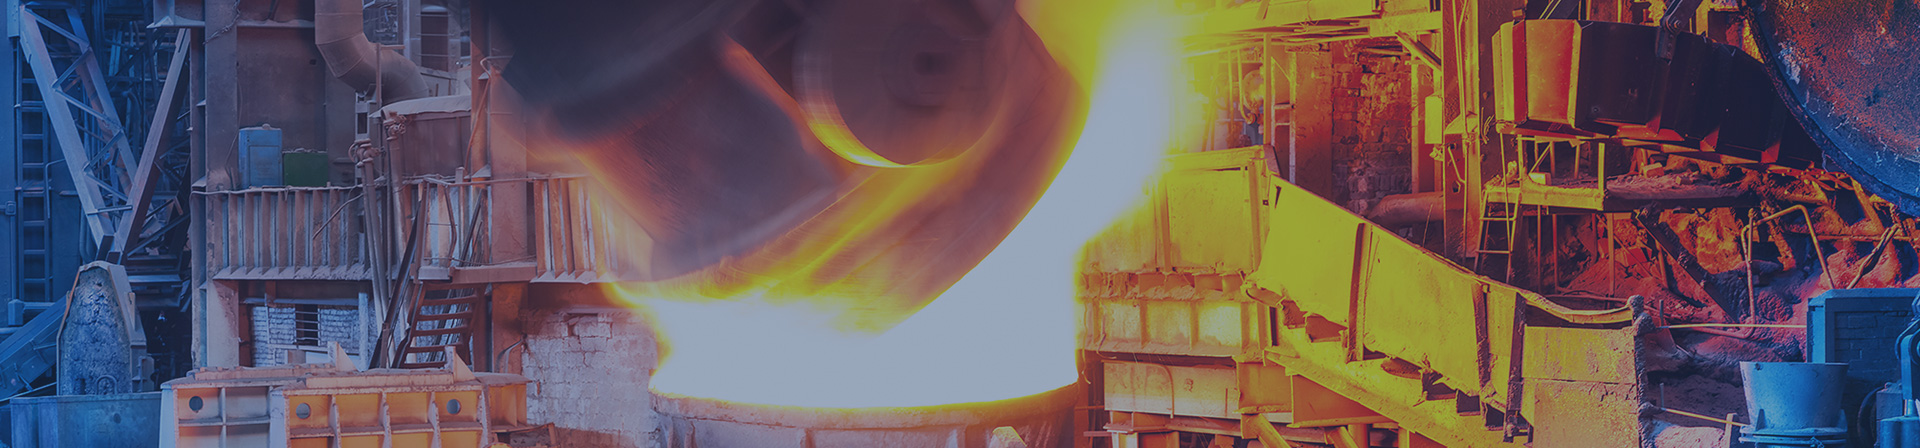 Steel / Non-ferrous Metal Industry